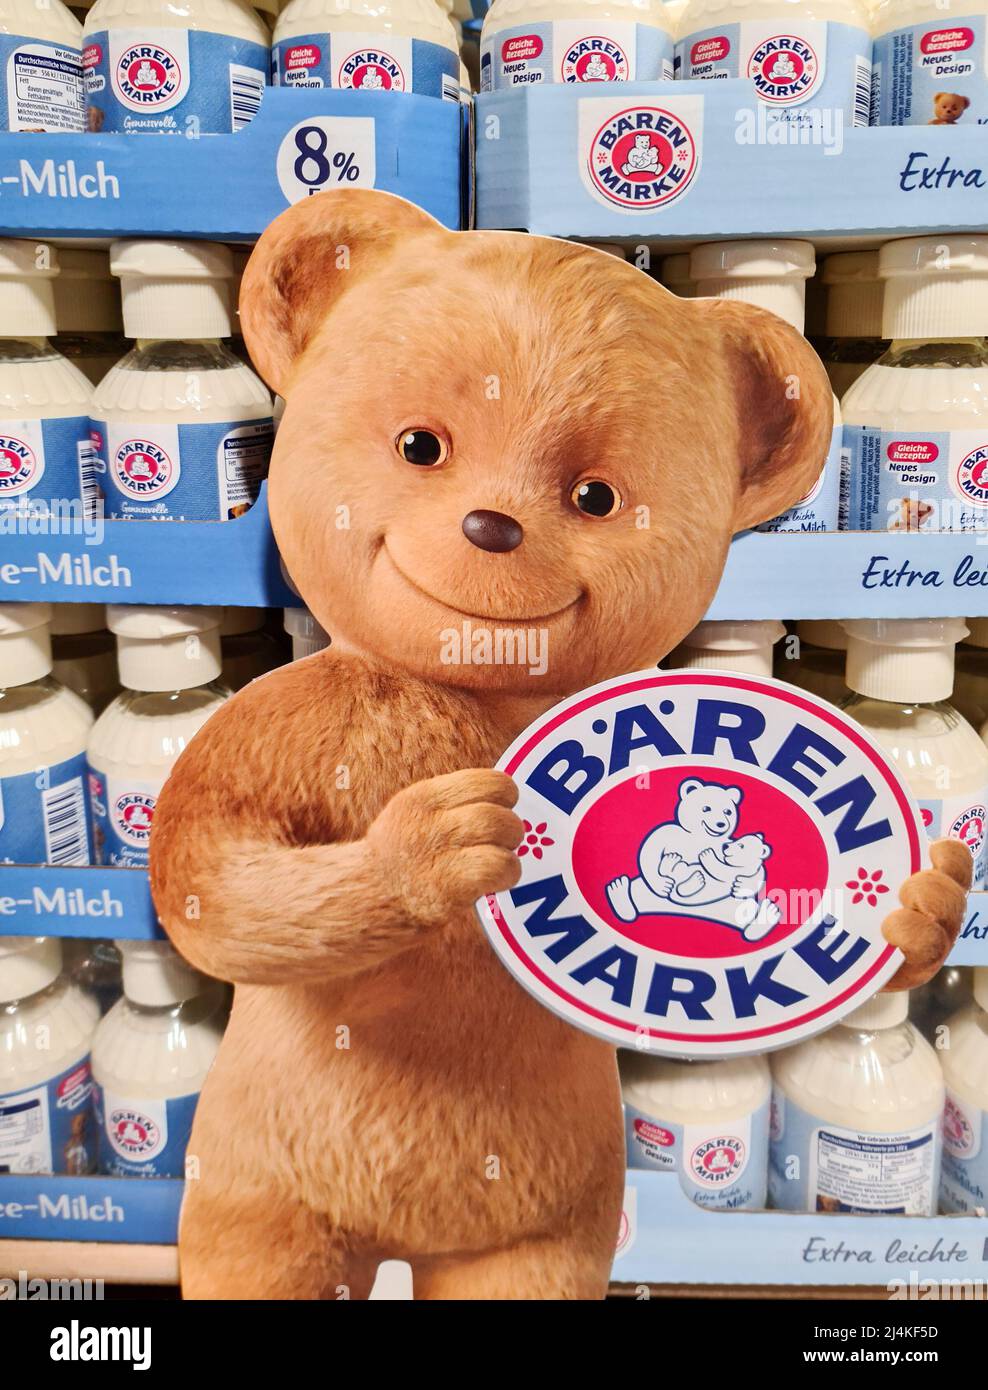 Kiel, Deutschland - 16. April 2022: Zahlreiche Flaschen Kaffee-Milch der  Marke Baerenmarke in einem Supermarkt Stockfotografie - Alamy